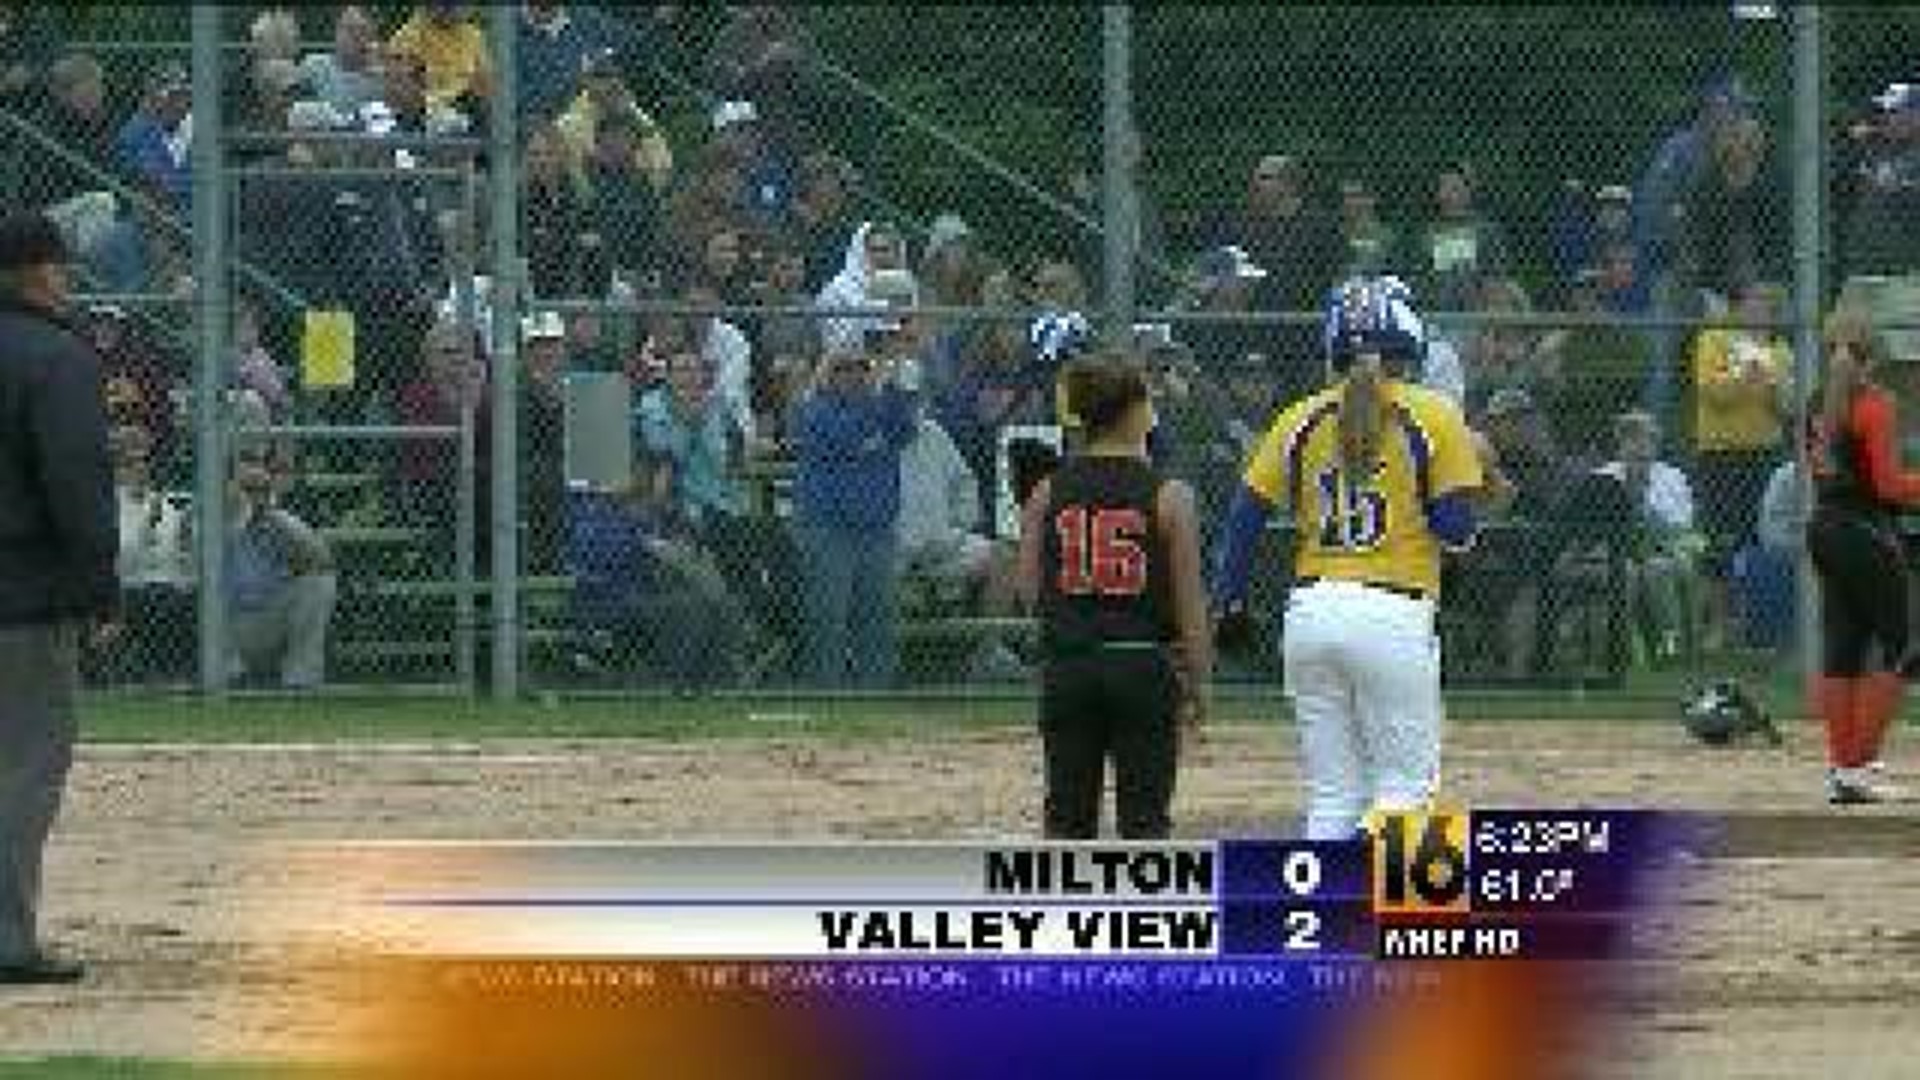 Valley View vs. Milton